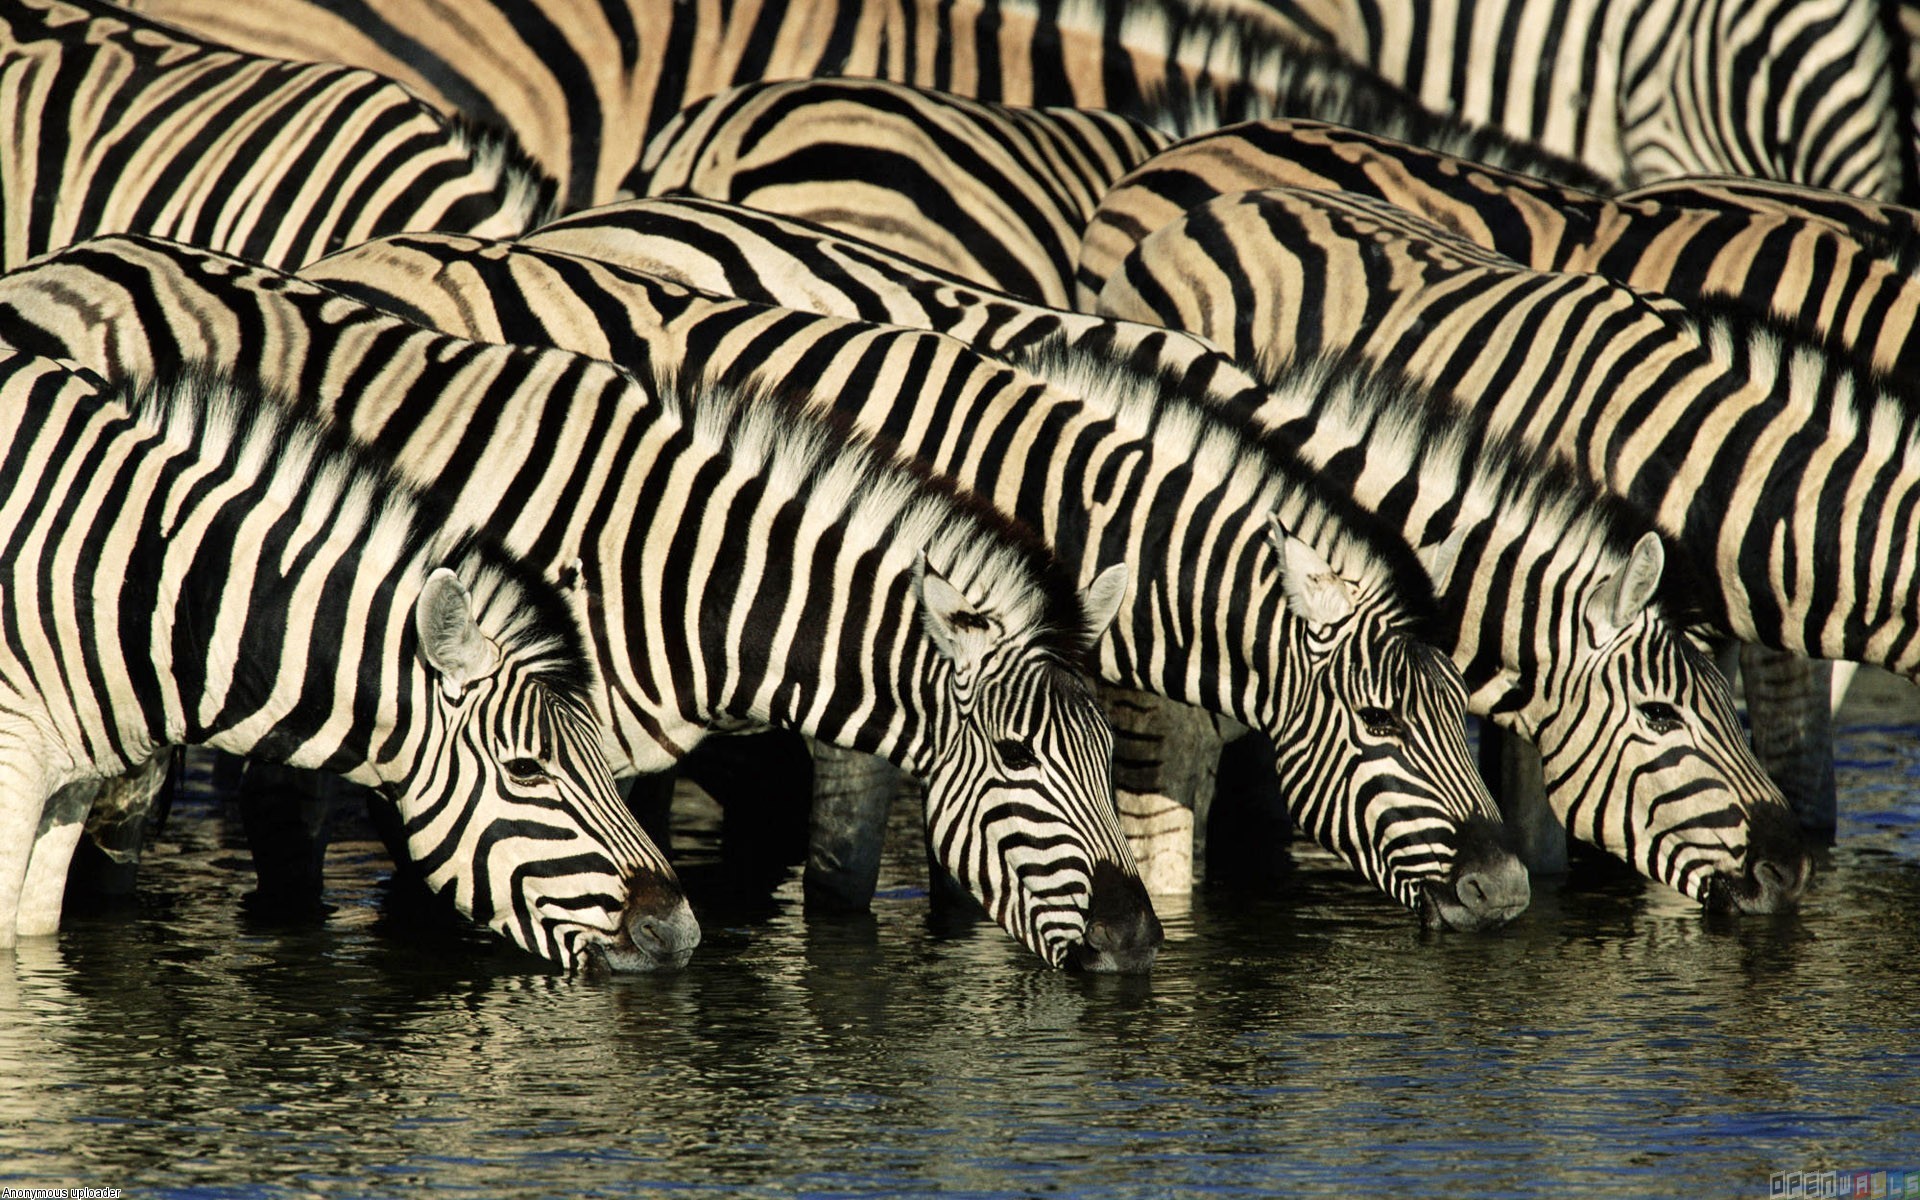 Zebras drinking water wallpaper #3343 - Open Walls